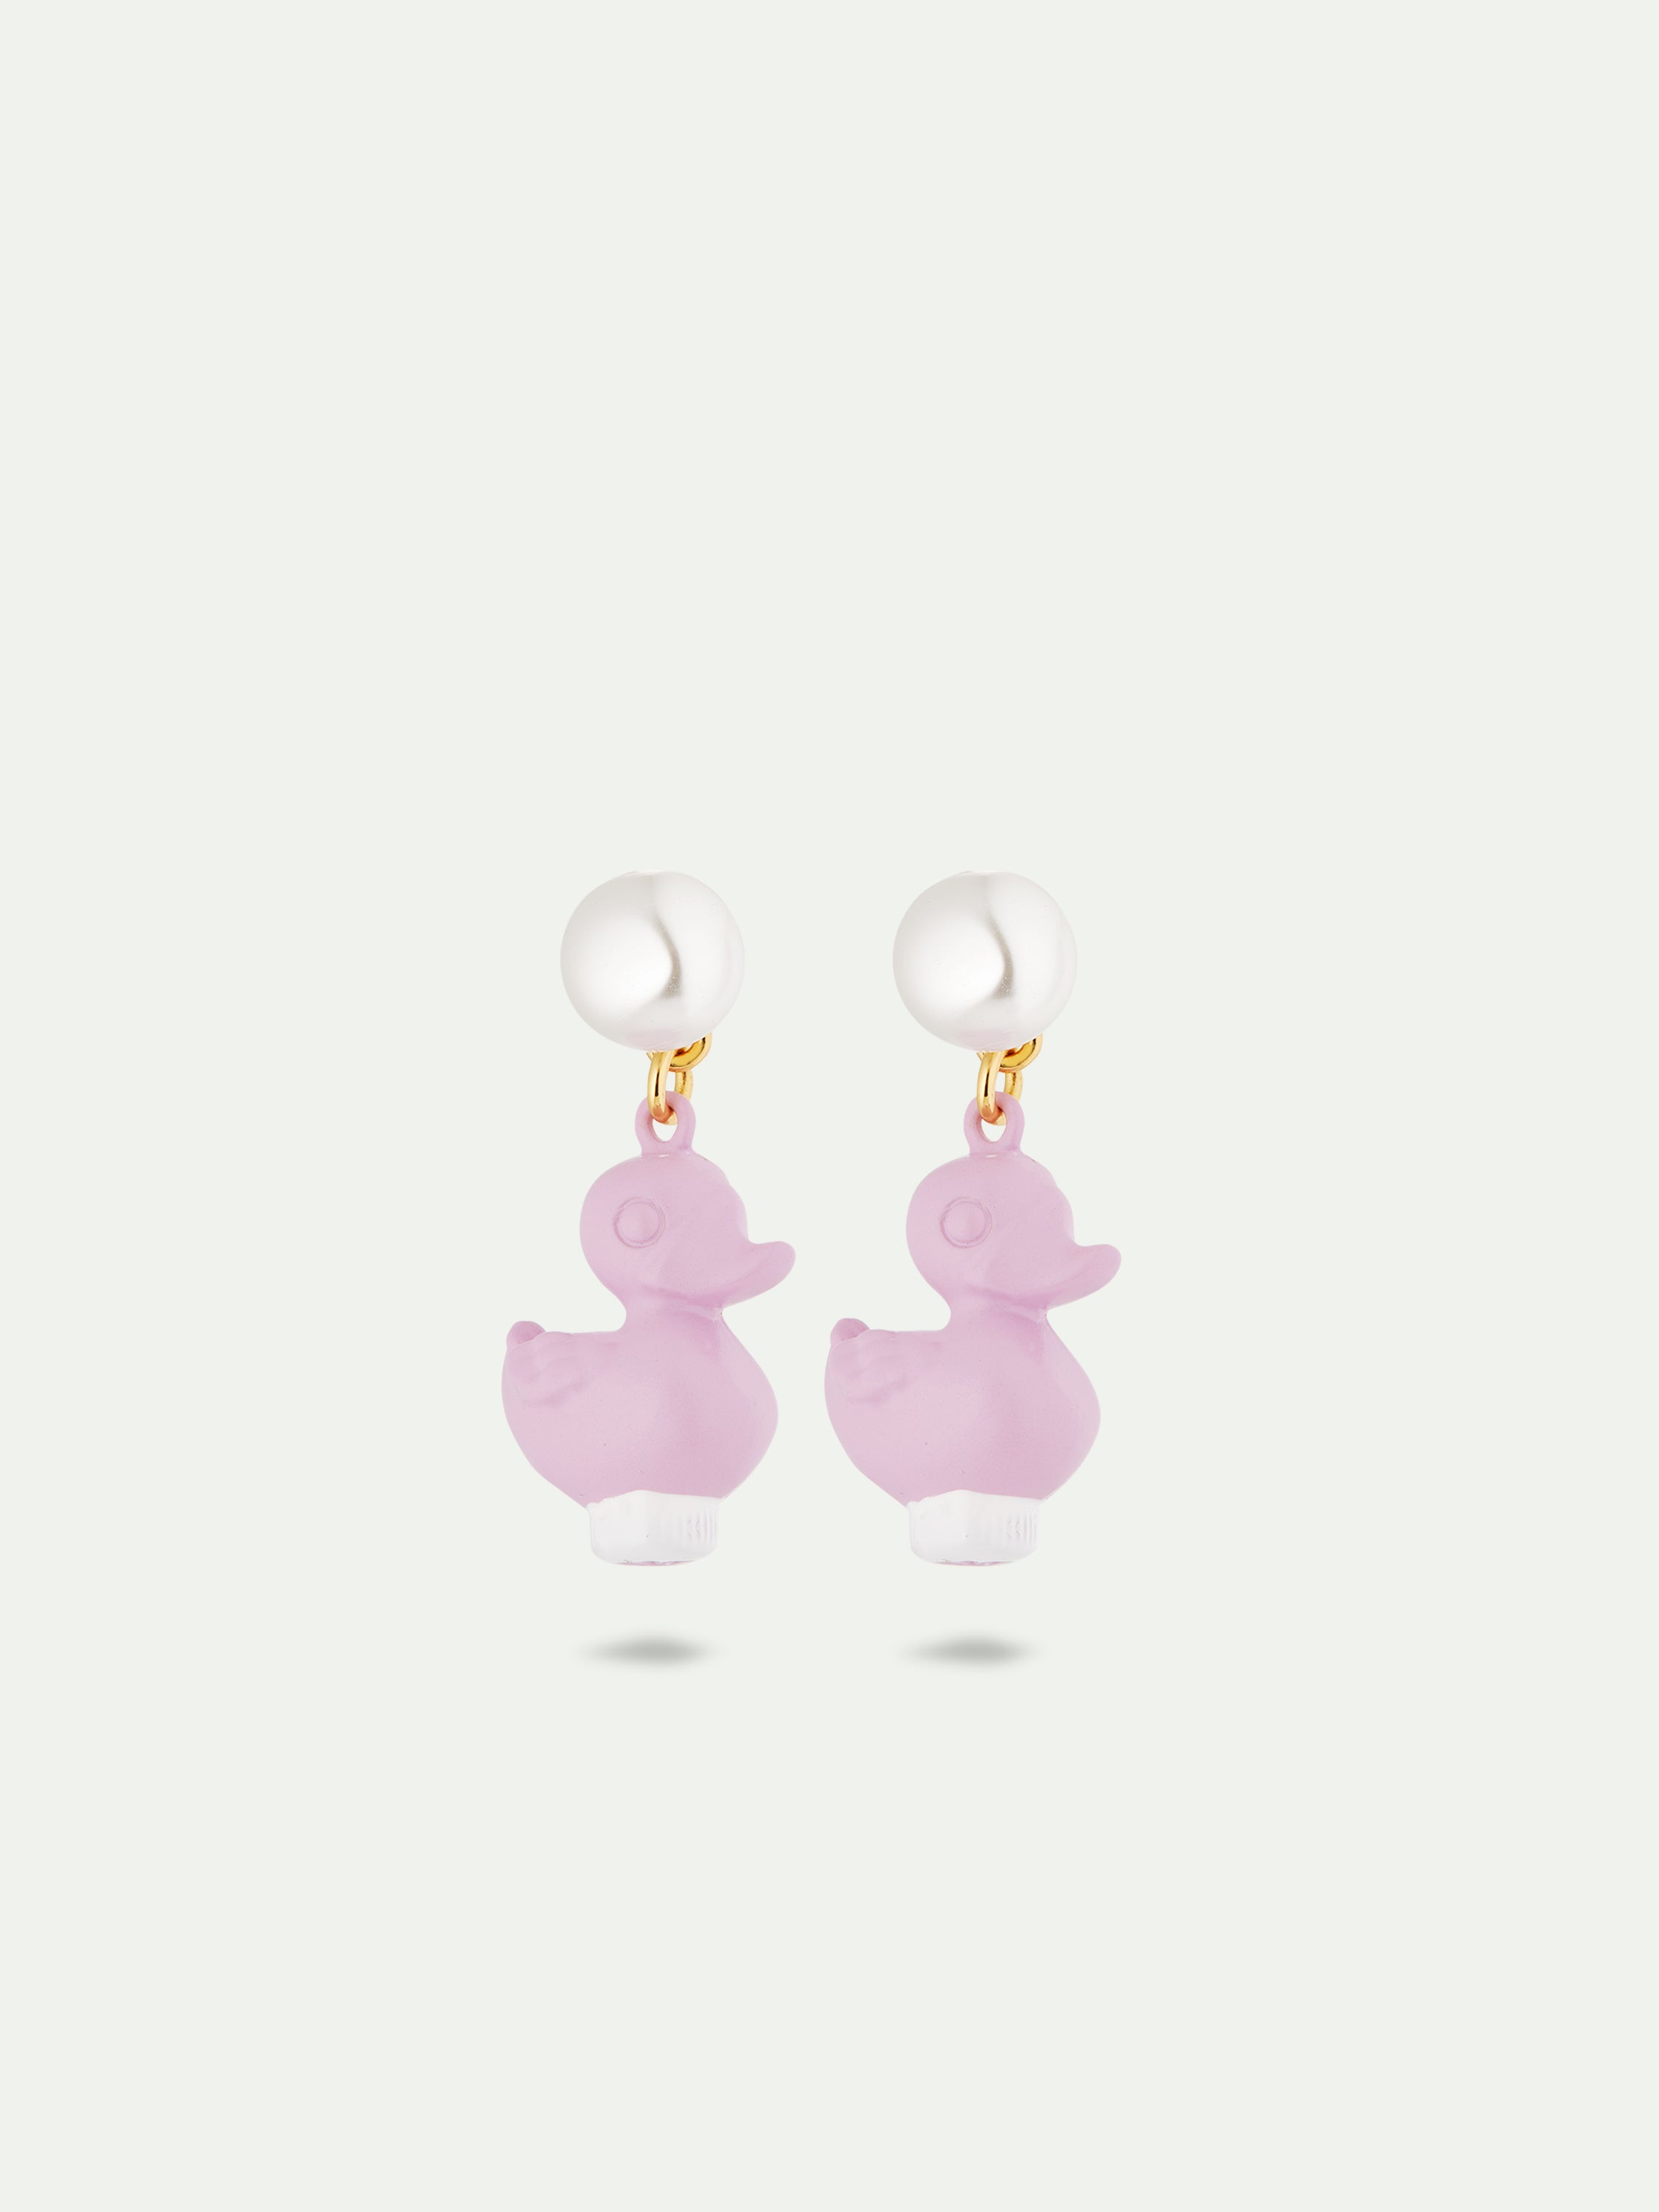 Purple plastic duck earrings